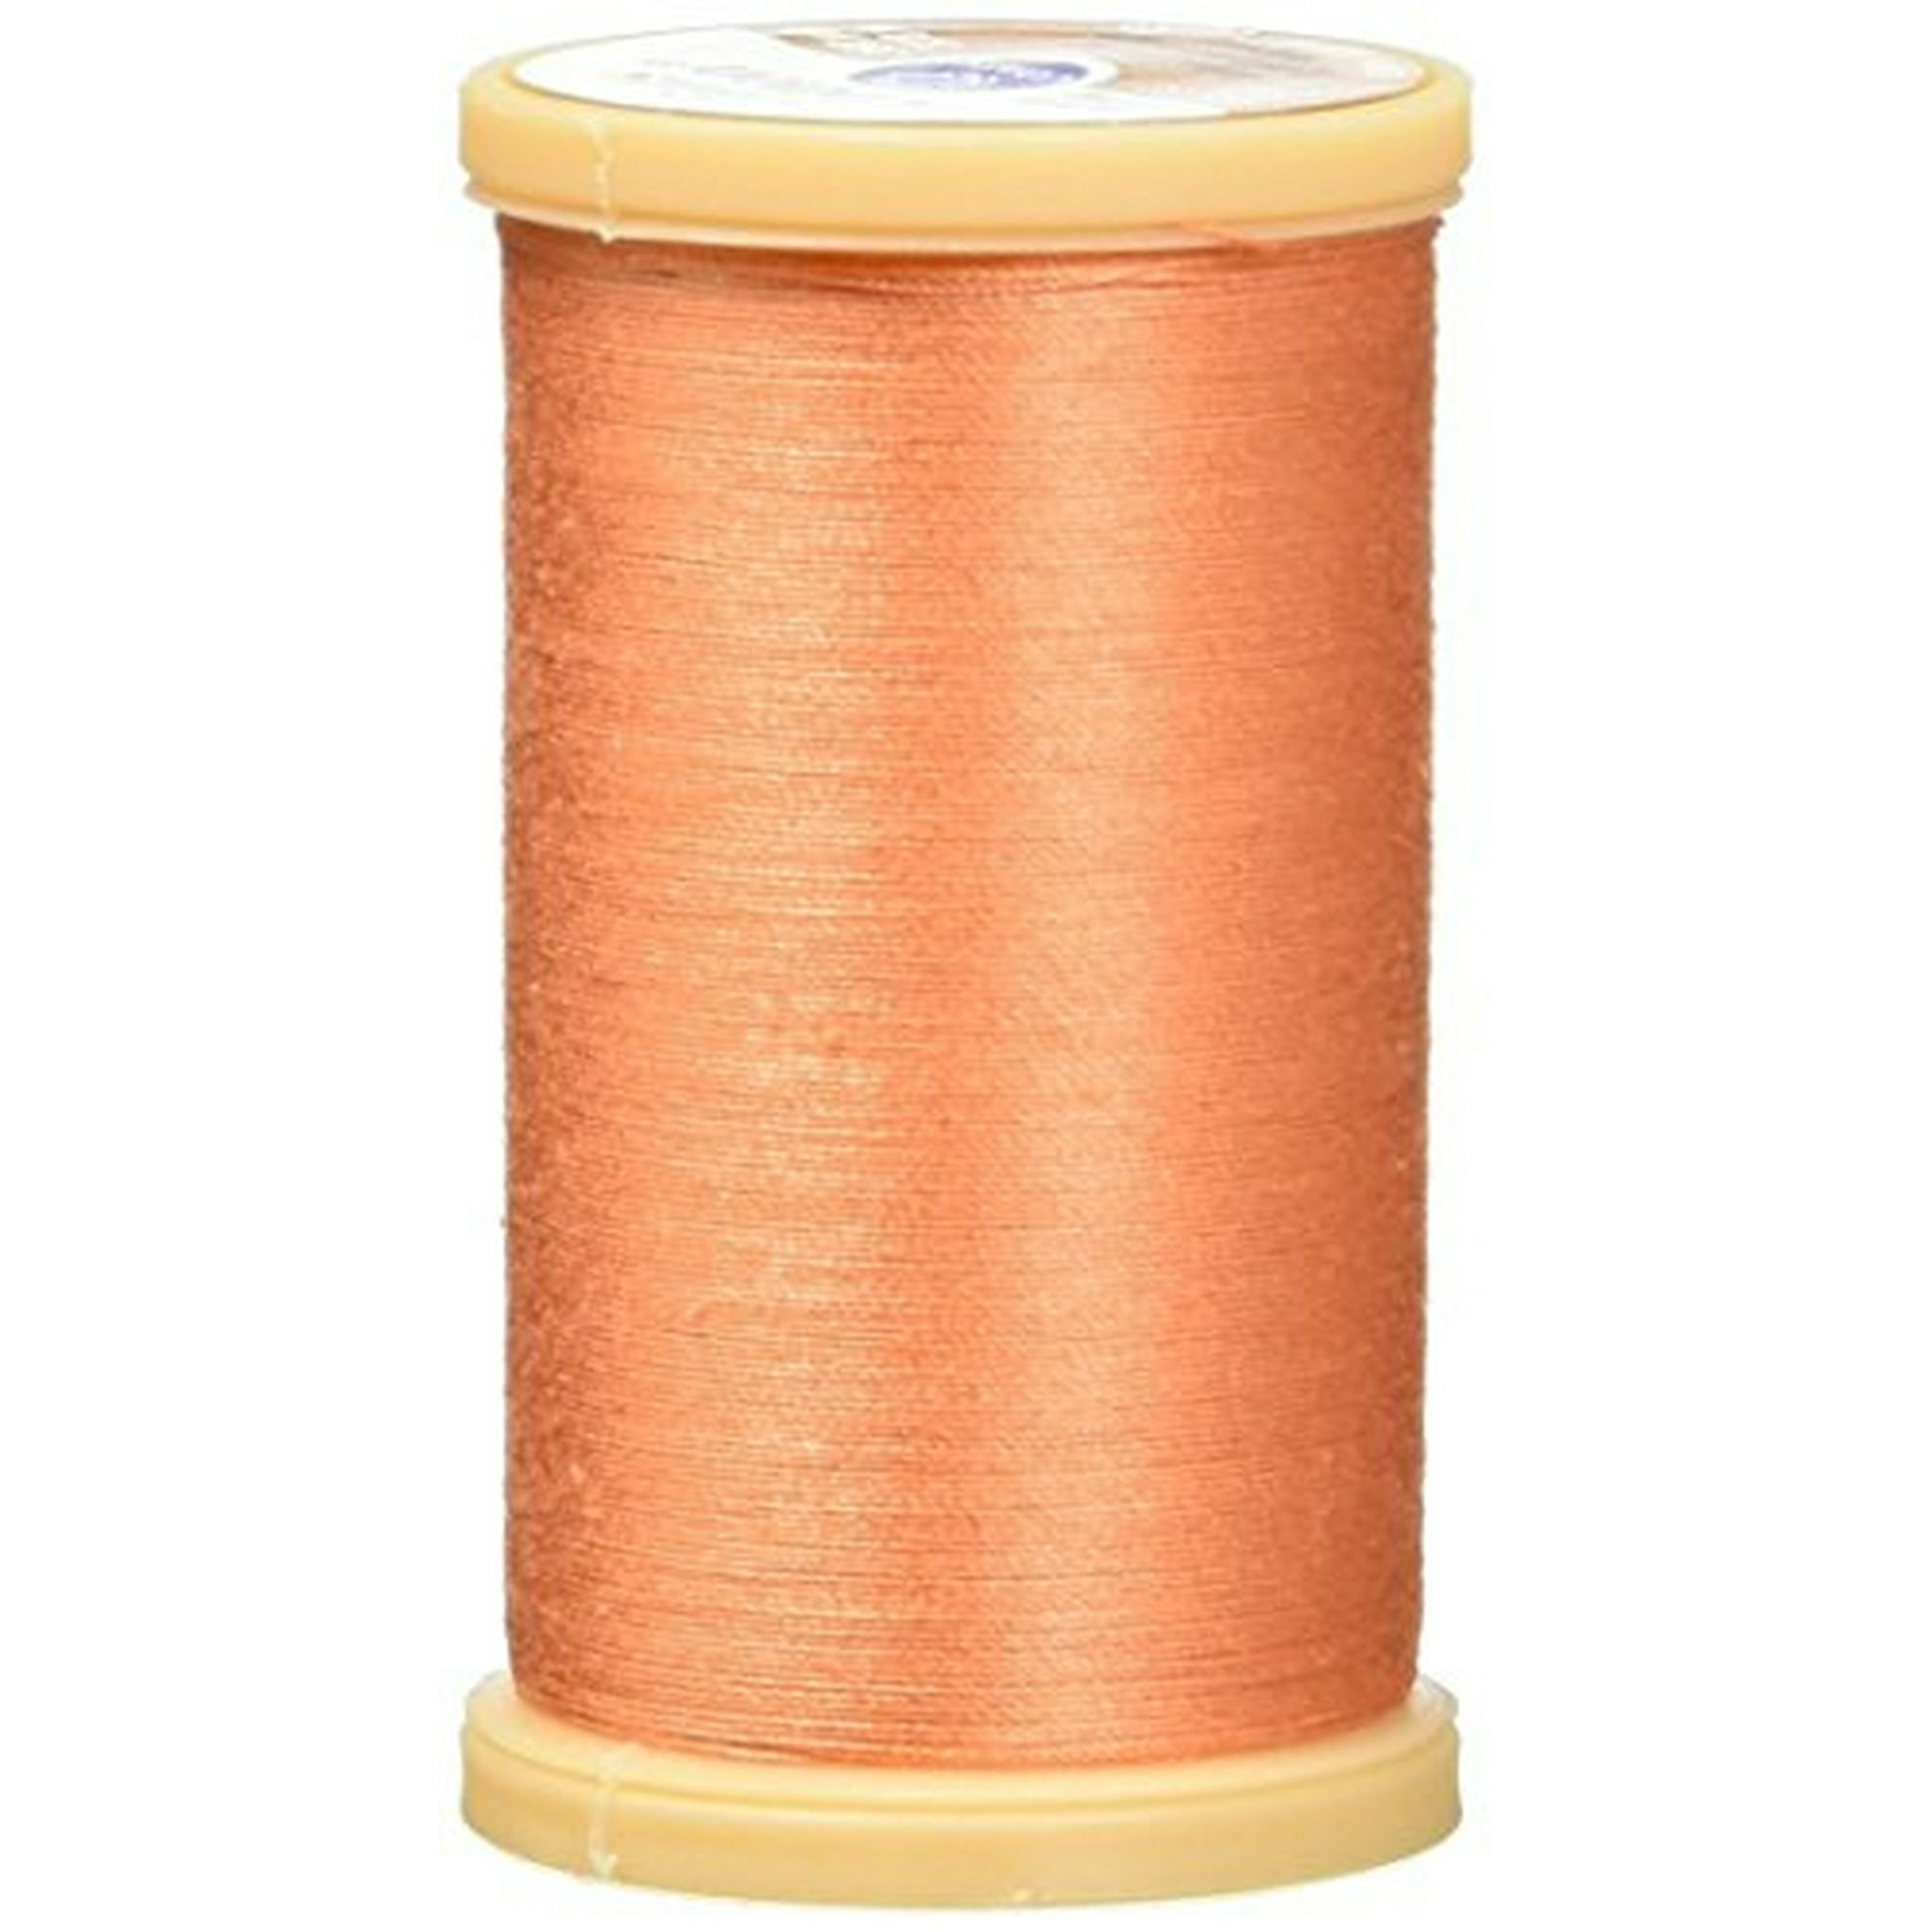 Coats Machine Quilting Cotton Thread 350Yd, Dark Orange